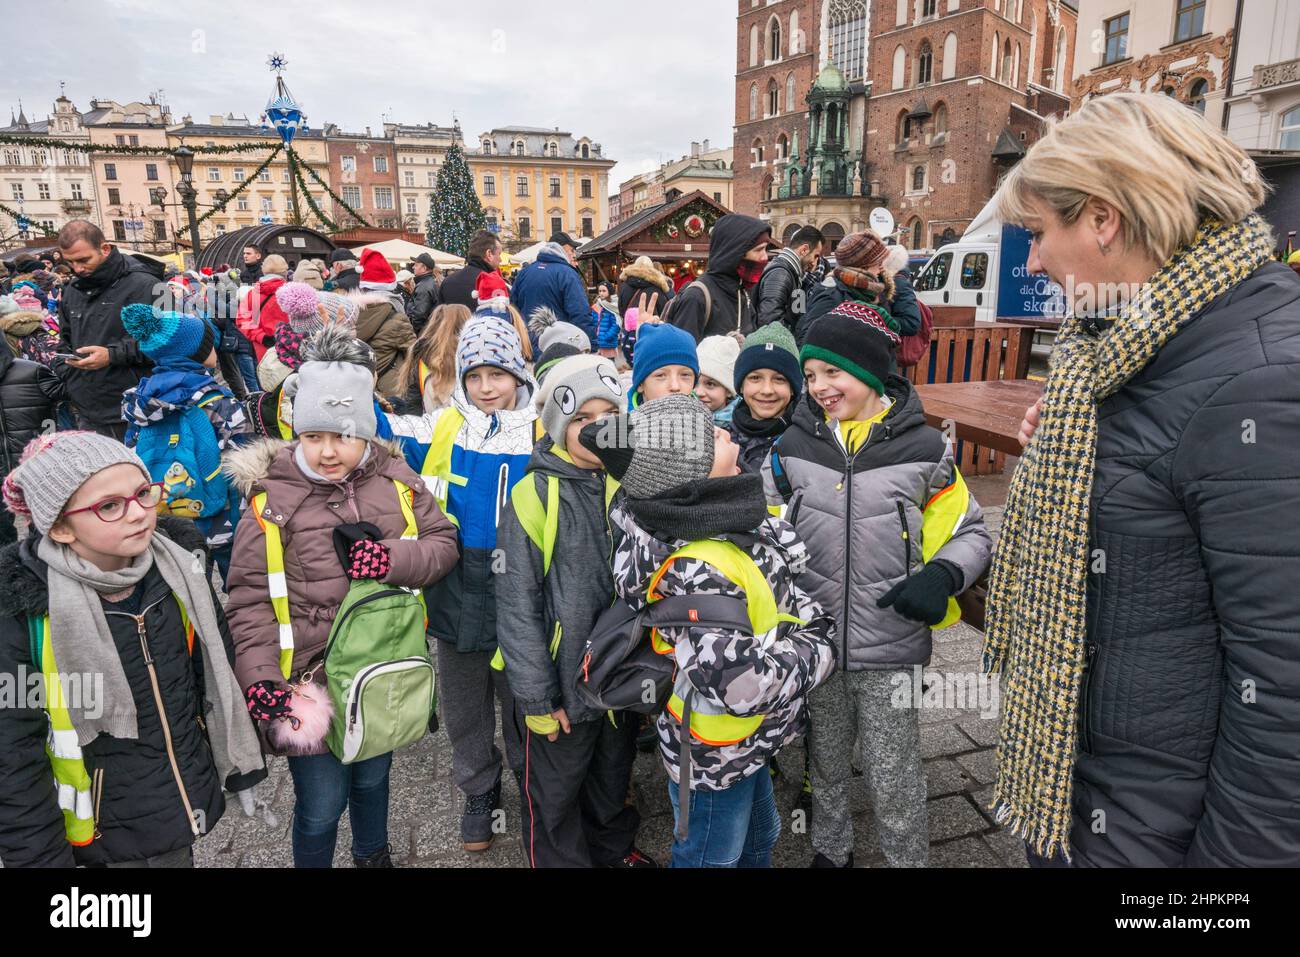 Jóvenes escolares y profesores que vienen a ver las escenas de la natividad de Kraków Szopka exhibidas durante el concurso anual en diciembre, en la Plaza del Mercado Principal, Kraków, Polonia Foto de stock